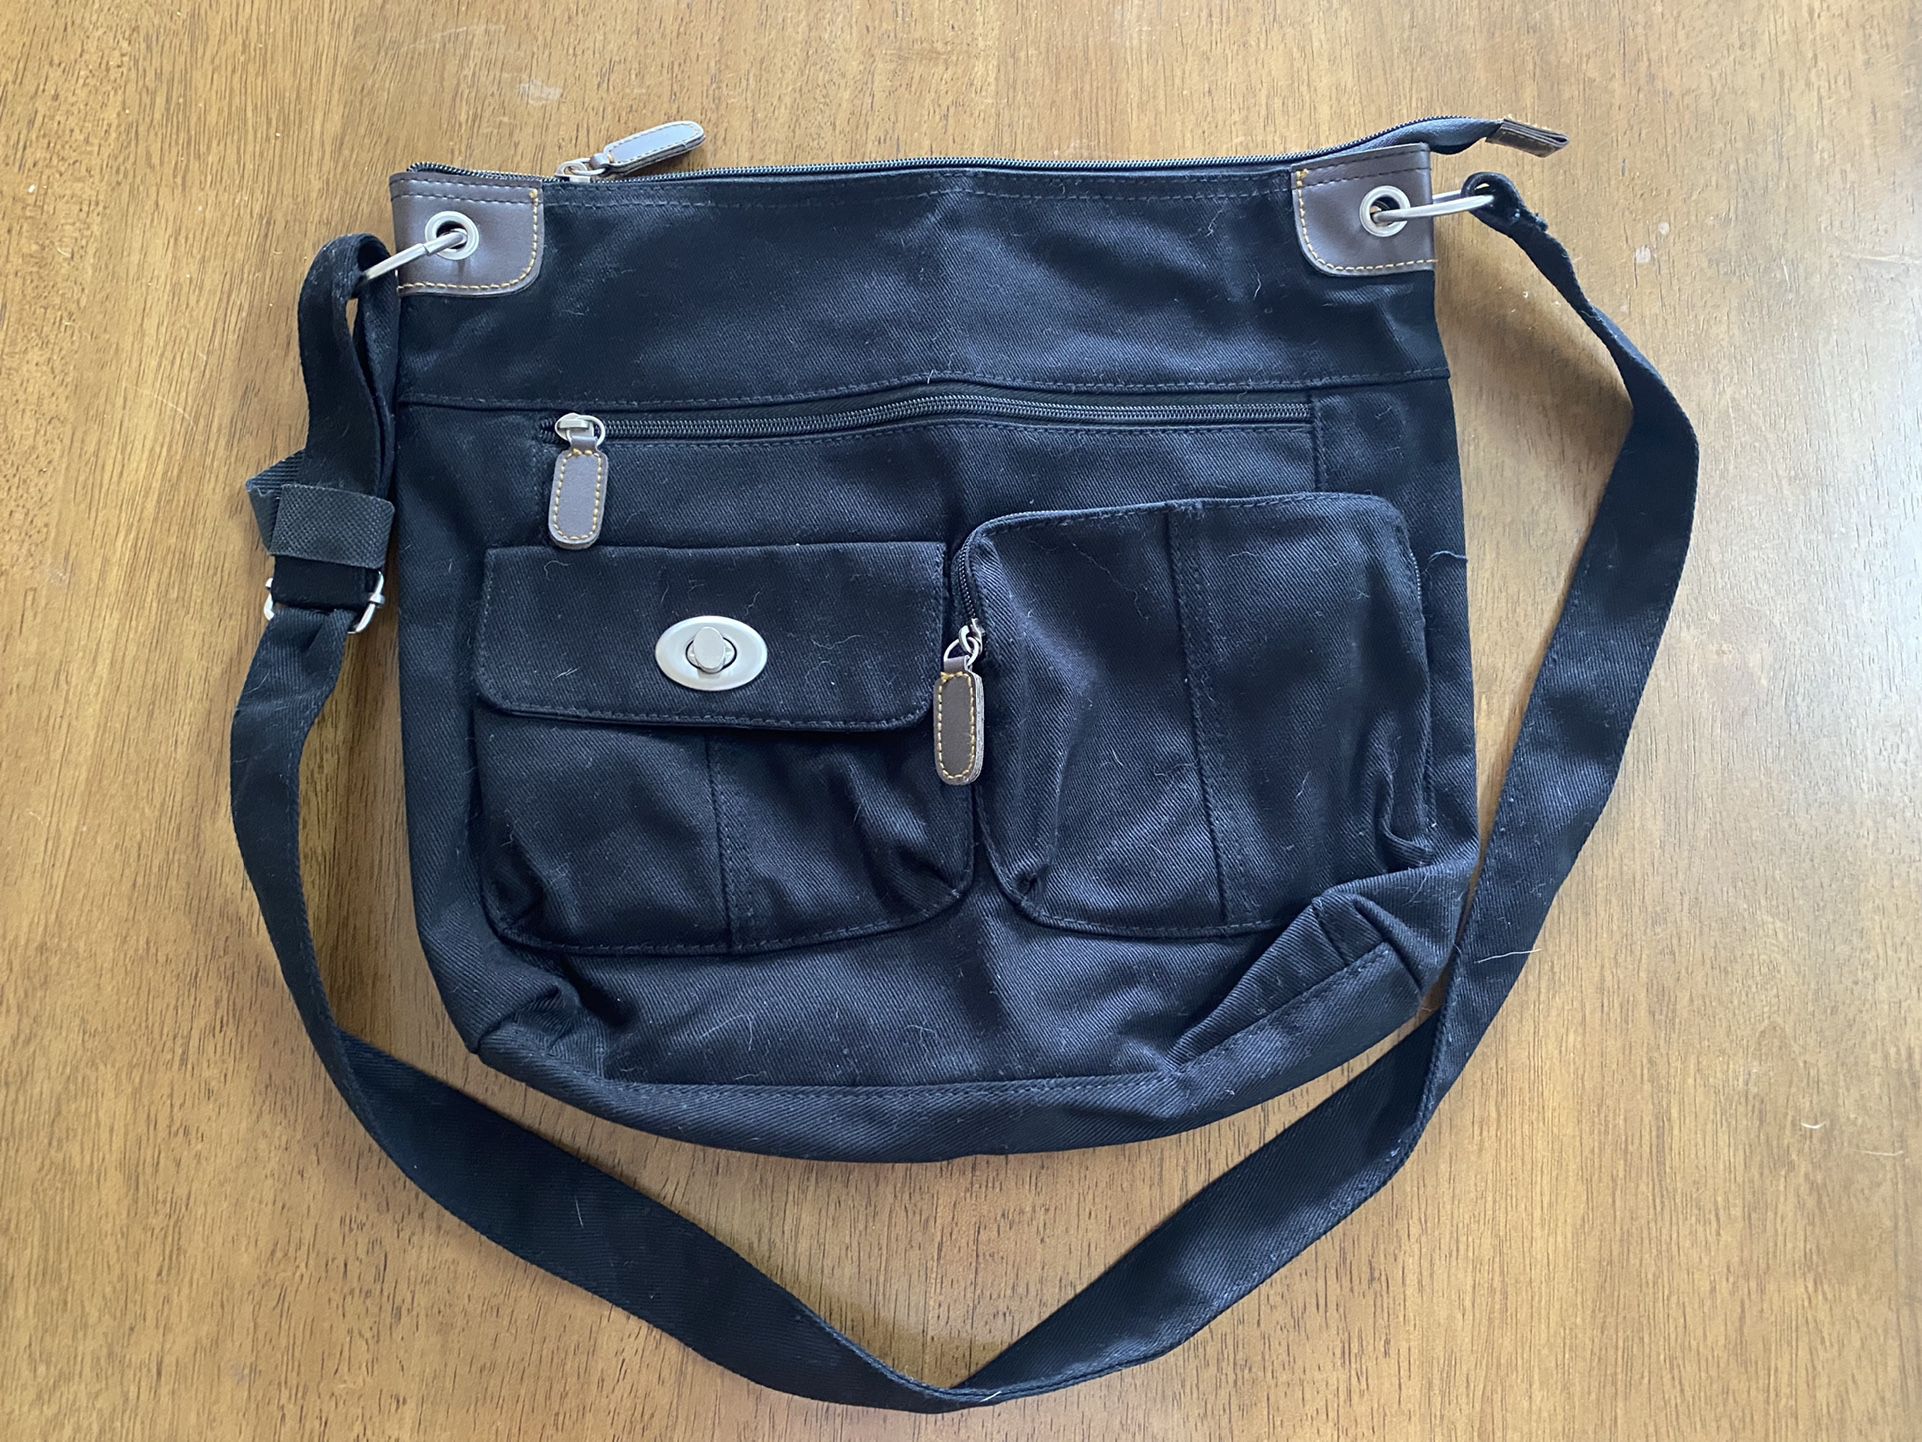 Black Shoulder Bag With Adjustable Strap